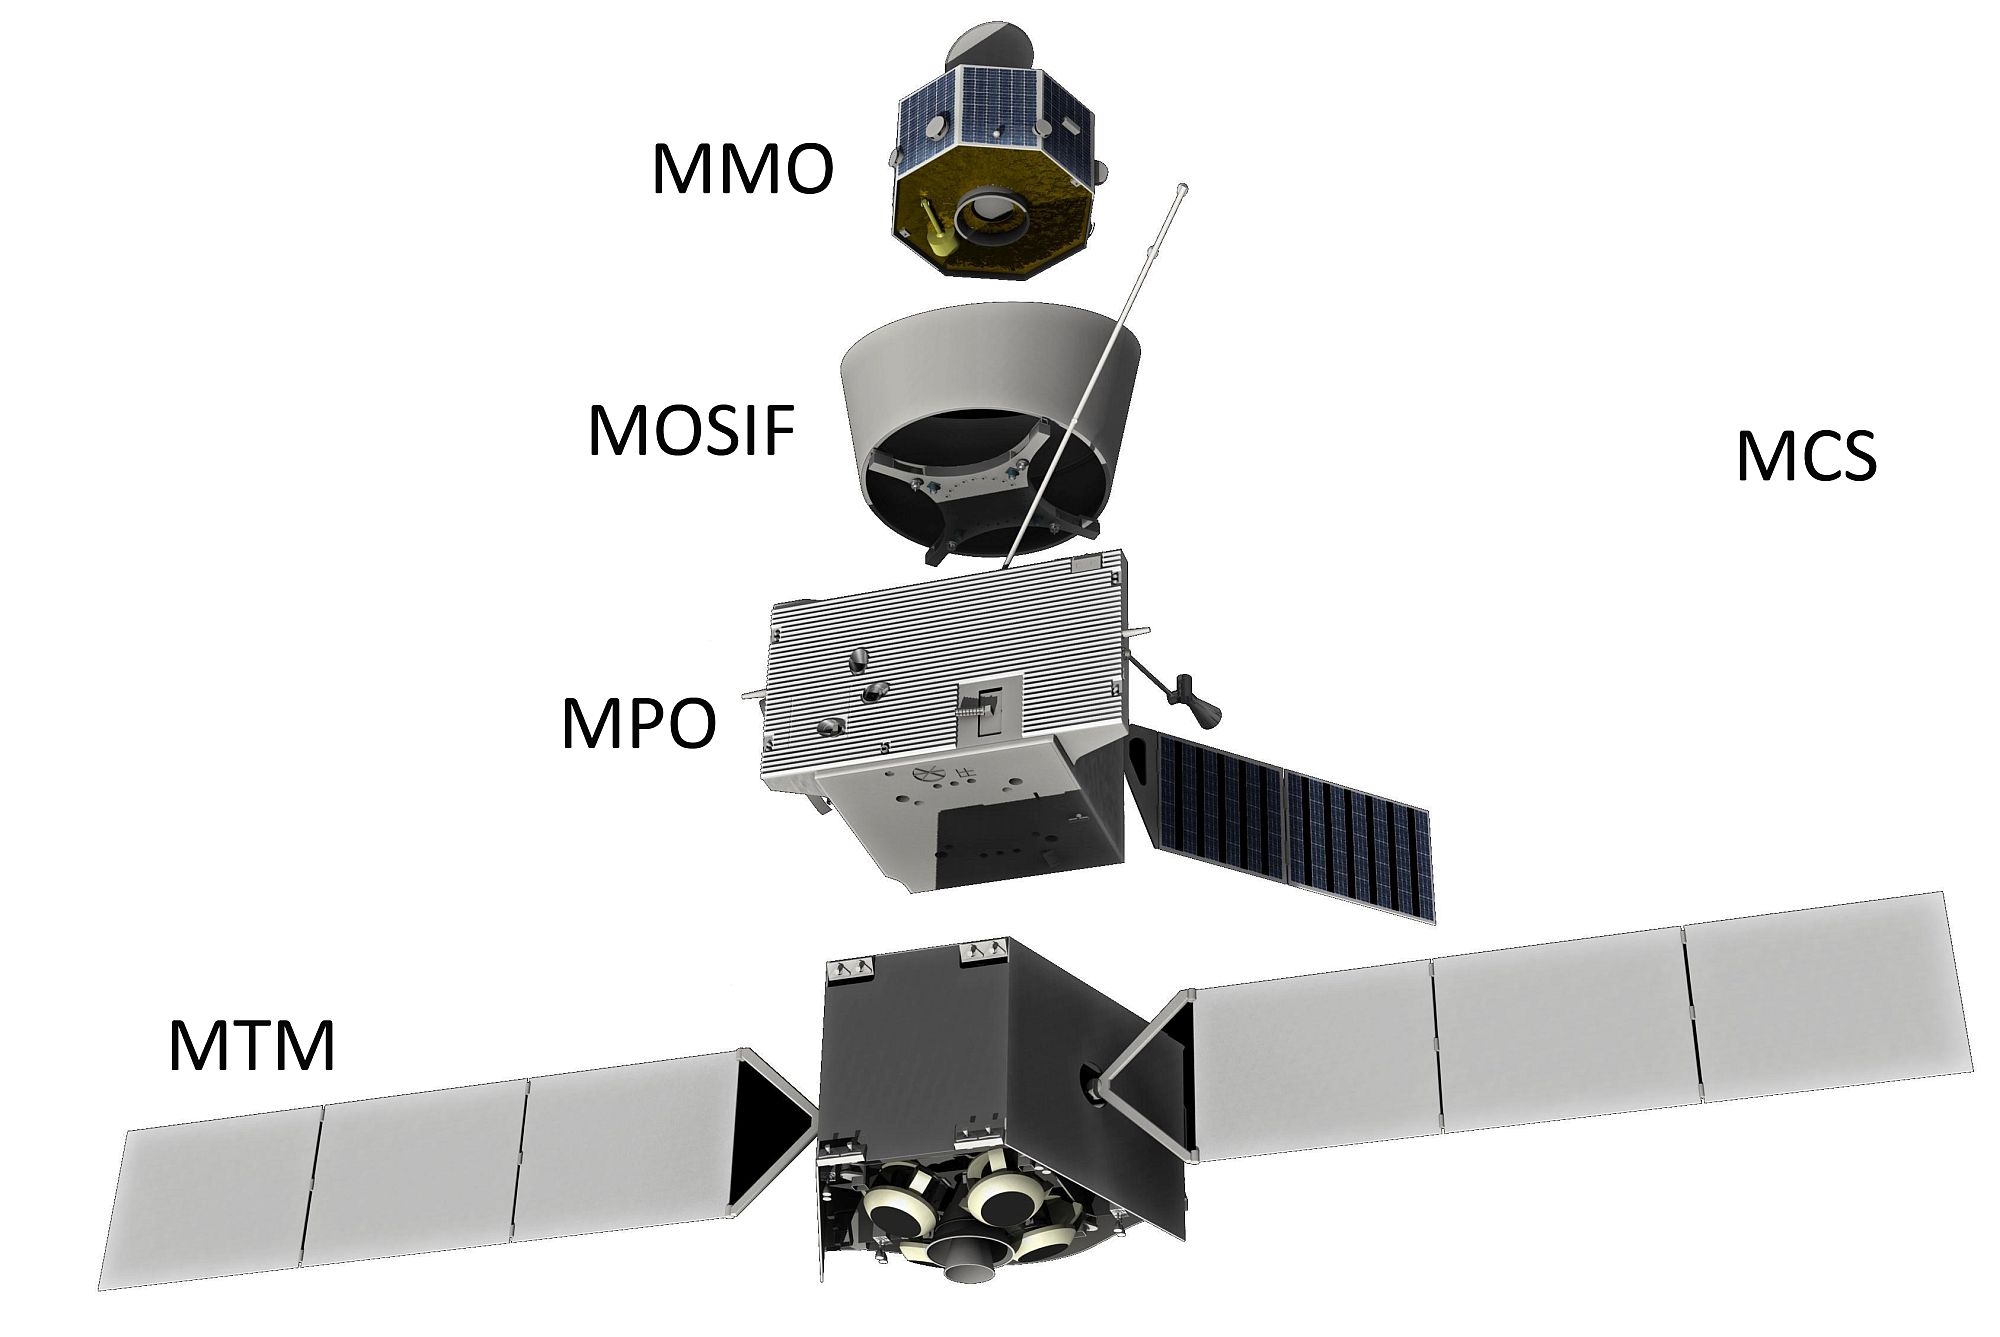 MCS: Mercury Composite Spacecraft